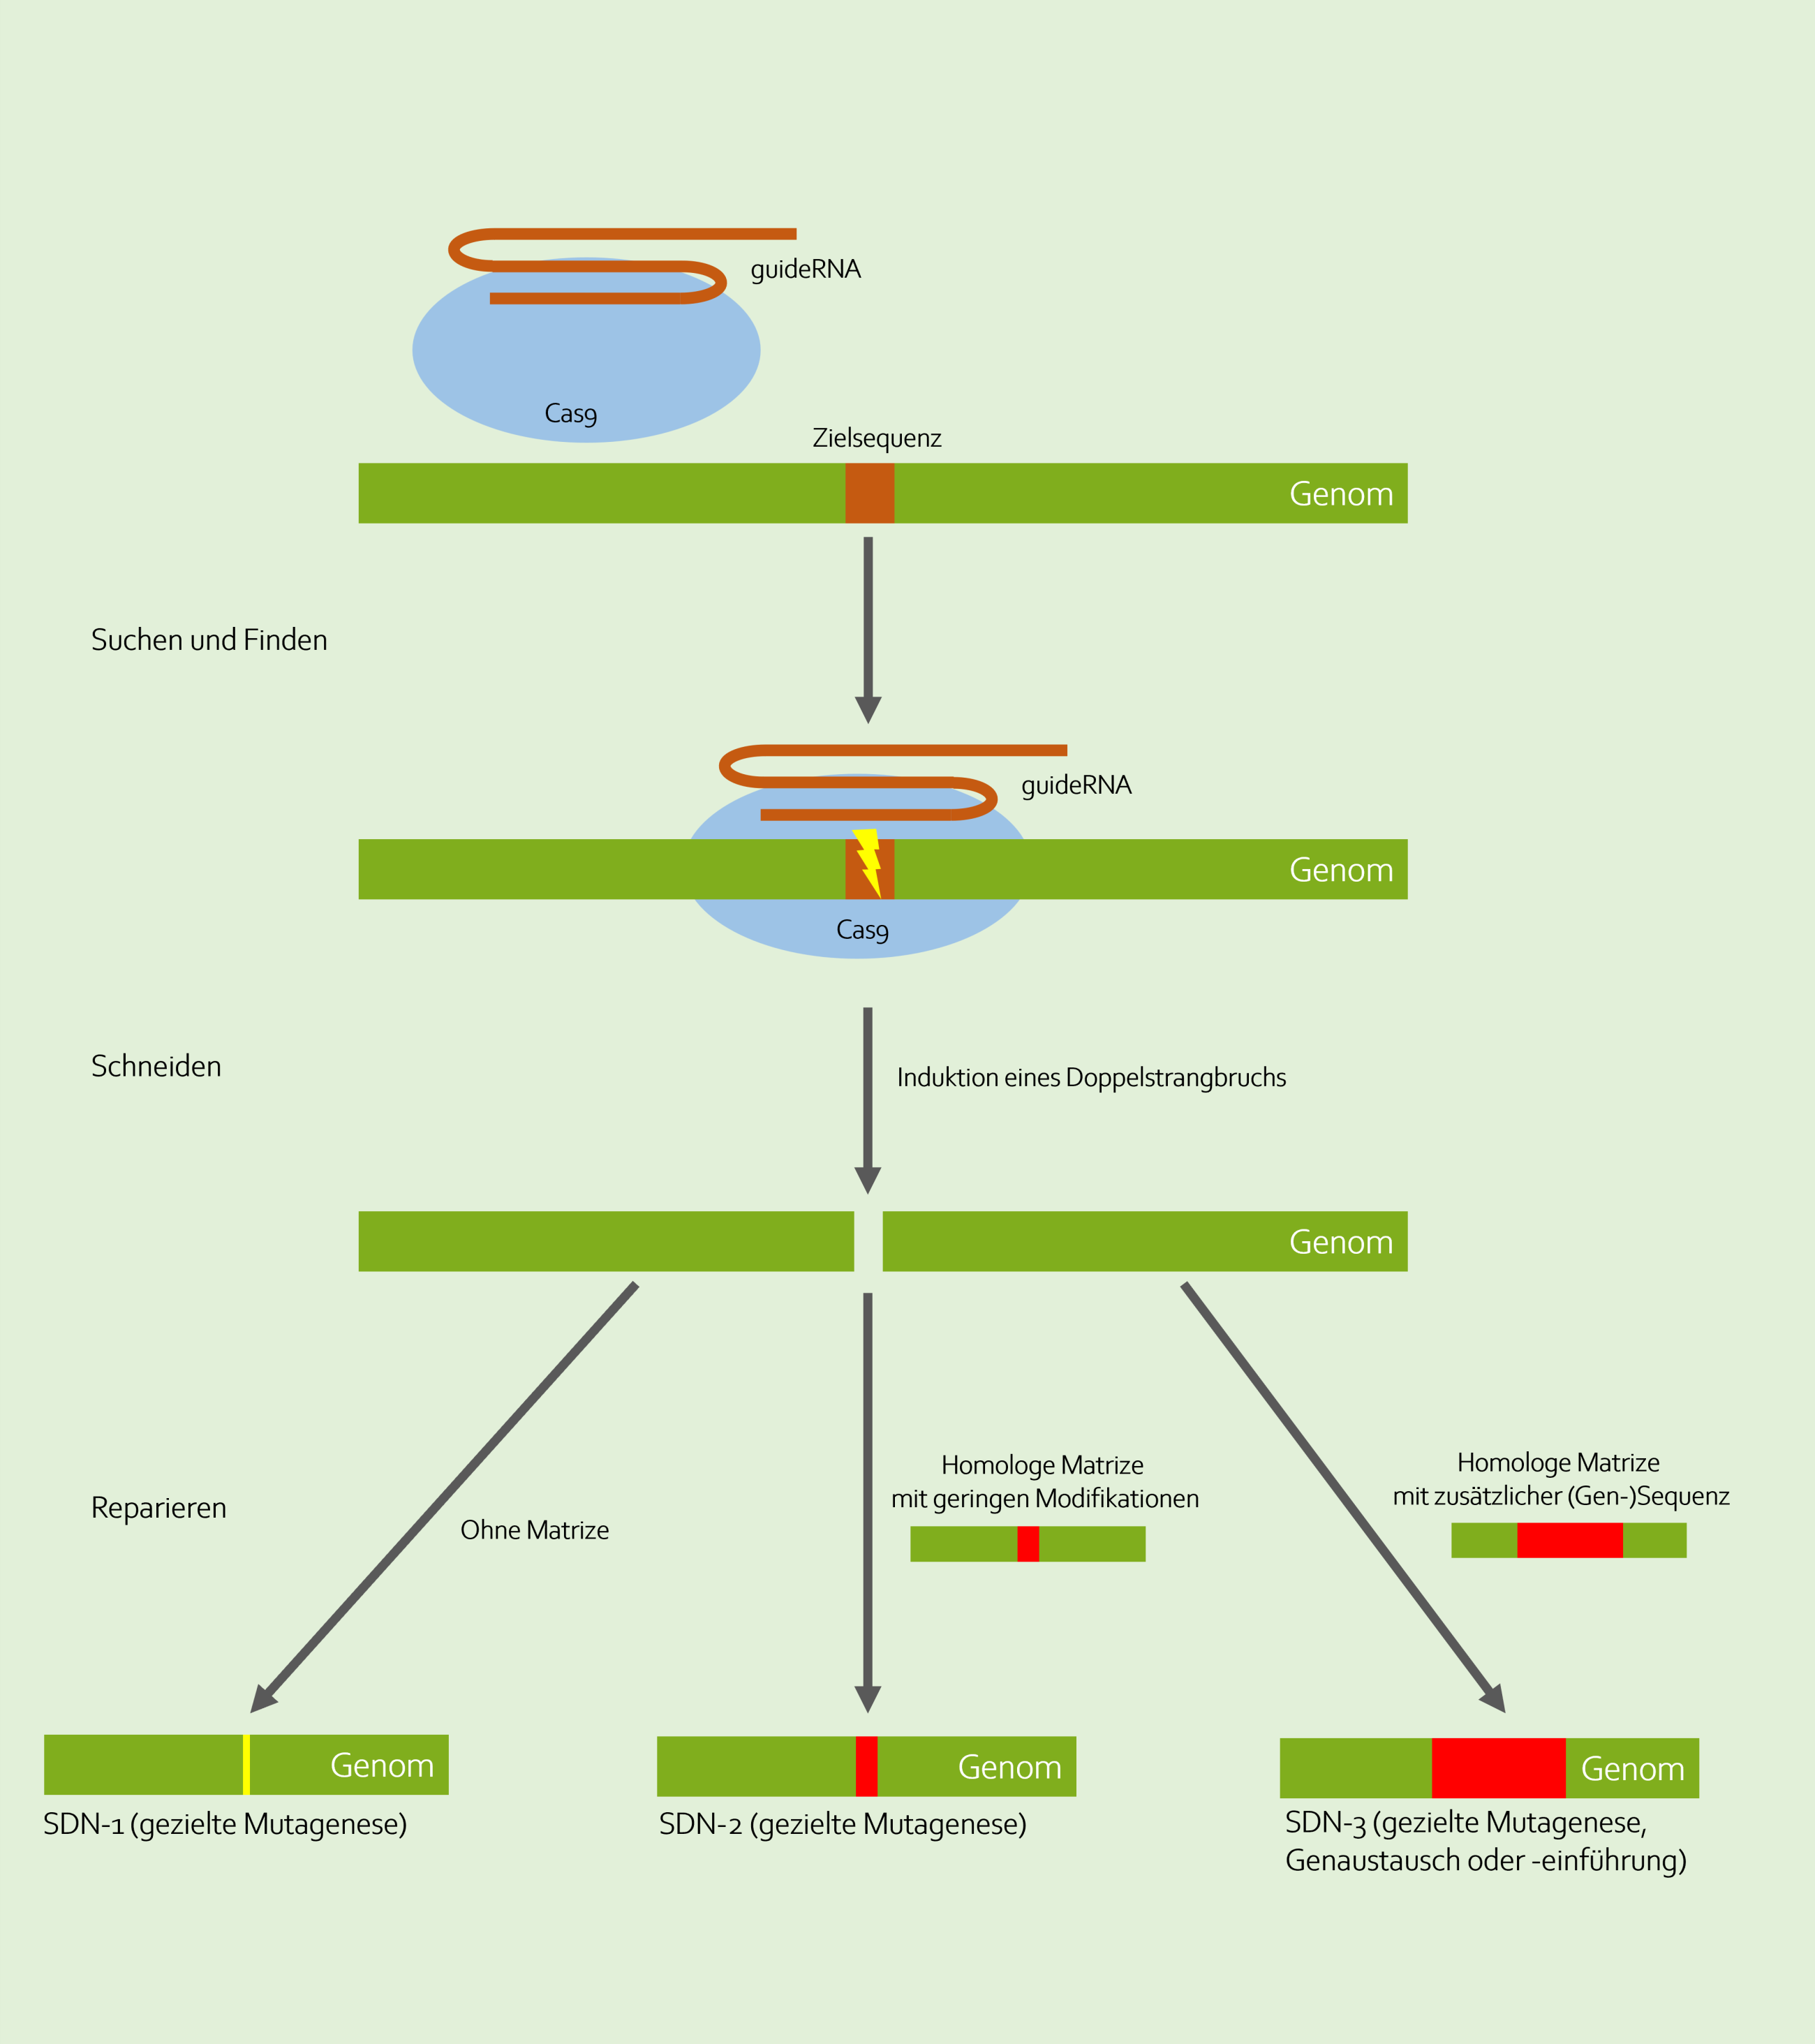 Mit der Genschere CRISPR/Cas9 können drei verschiedene Typen von Veränderungen am Genom vorgenommen werden, die mit SDN-1 (site directed nuclease 1), SDN-2 und SDN-3 bezeichnet werden. Bei allen wird das CRISPR/Cas-System zunächst in die pflanzlichen Zellen eingebracht, die guide RNA findet ihre Zielsequenz und die Nuklease spaltet die DNA (Doppelstrangbruch). Bei SDN-1 führt dieser Schaden zur Aktivierung von Reparaturmechanismen der Zelle, die fehleranfällig sind. So kommt es zu zufälligen Punktmutationen an der Schnittstelle. Bei der SDN-2-Technik wird zusätzlich ein Oligonukleotid mit in die Zellen eingeführt, das als Reparatur-Vorlage dient. Es kommt zu einem gezielten Basenaustausch, kleinere Deletionen oder zur Einfügung weniger zusätzlicher Basenpaare.  Auch bei der SDN-3-Technik wird zusätzlich ein synthetisches Oligonukleotid als Reparatur-Vorlage eingeführt. Es enthält aber deutlich längere DNA-Sequenzen. Auf diese Weise können auch ganze Gene zusätzlich integriert werden (Quelle: www.botanik.kit.edu/garten/276.php#gallery-3, eigene Darstellung).